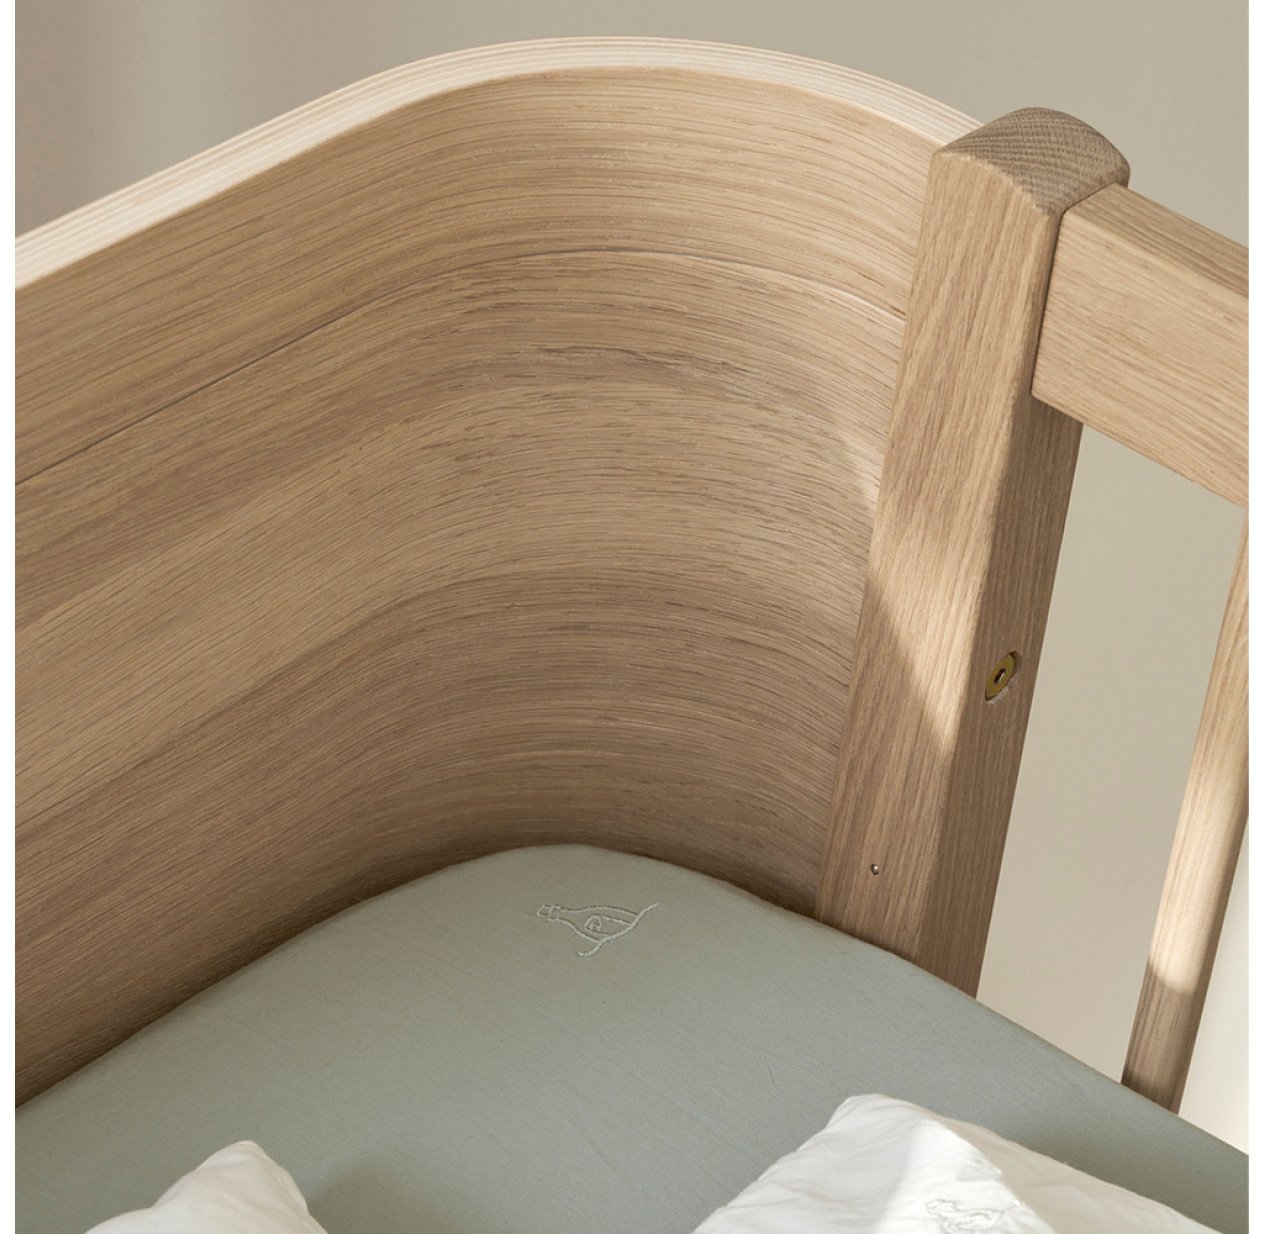 Oliver Furniture, Lit évolutif Wood Mini+